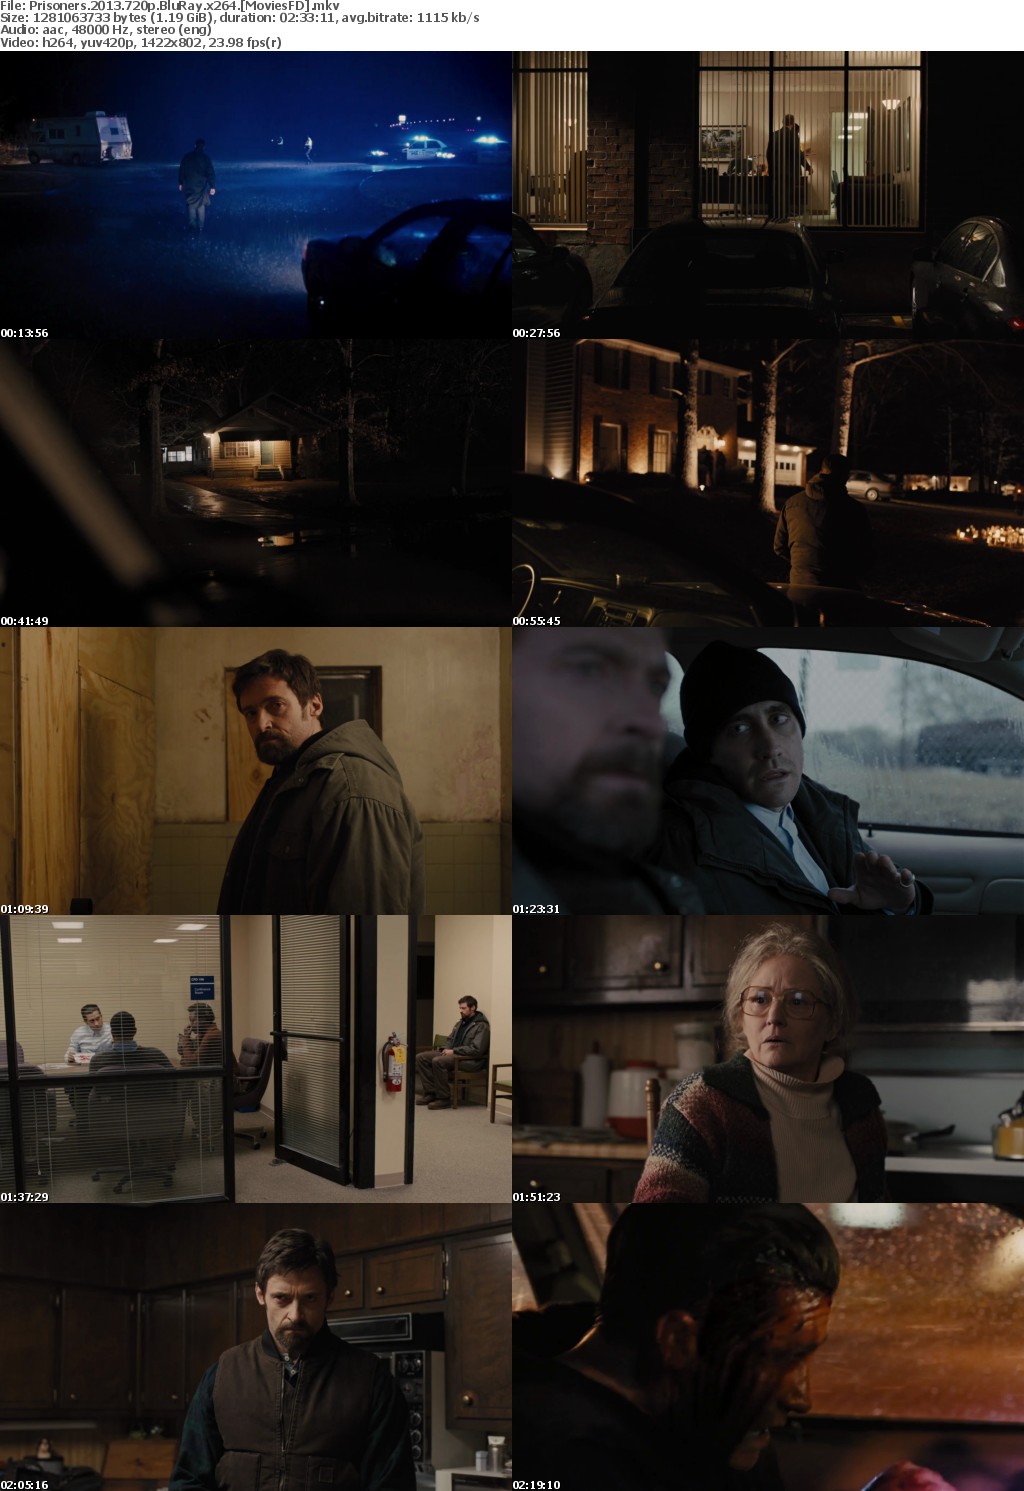 Prisoners (2013) 720p BluRay x264 - MoviesFD